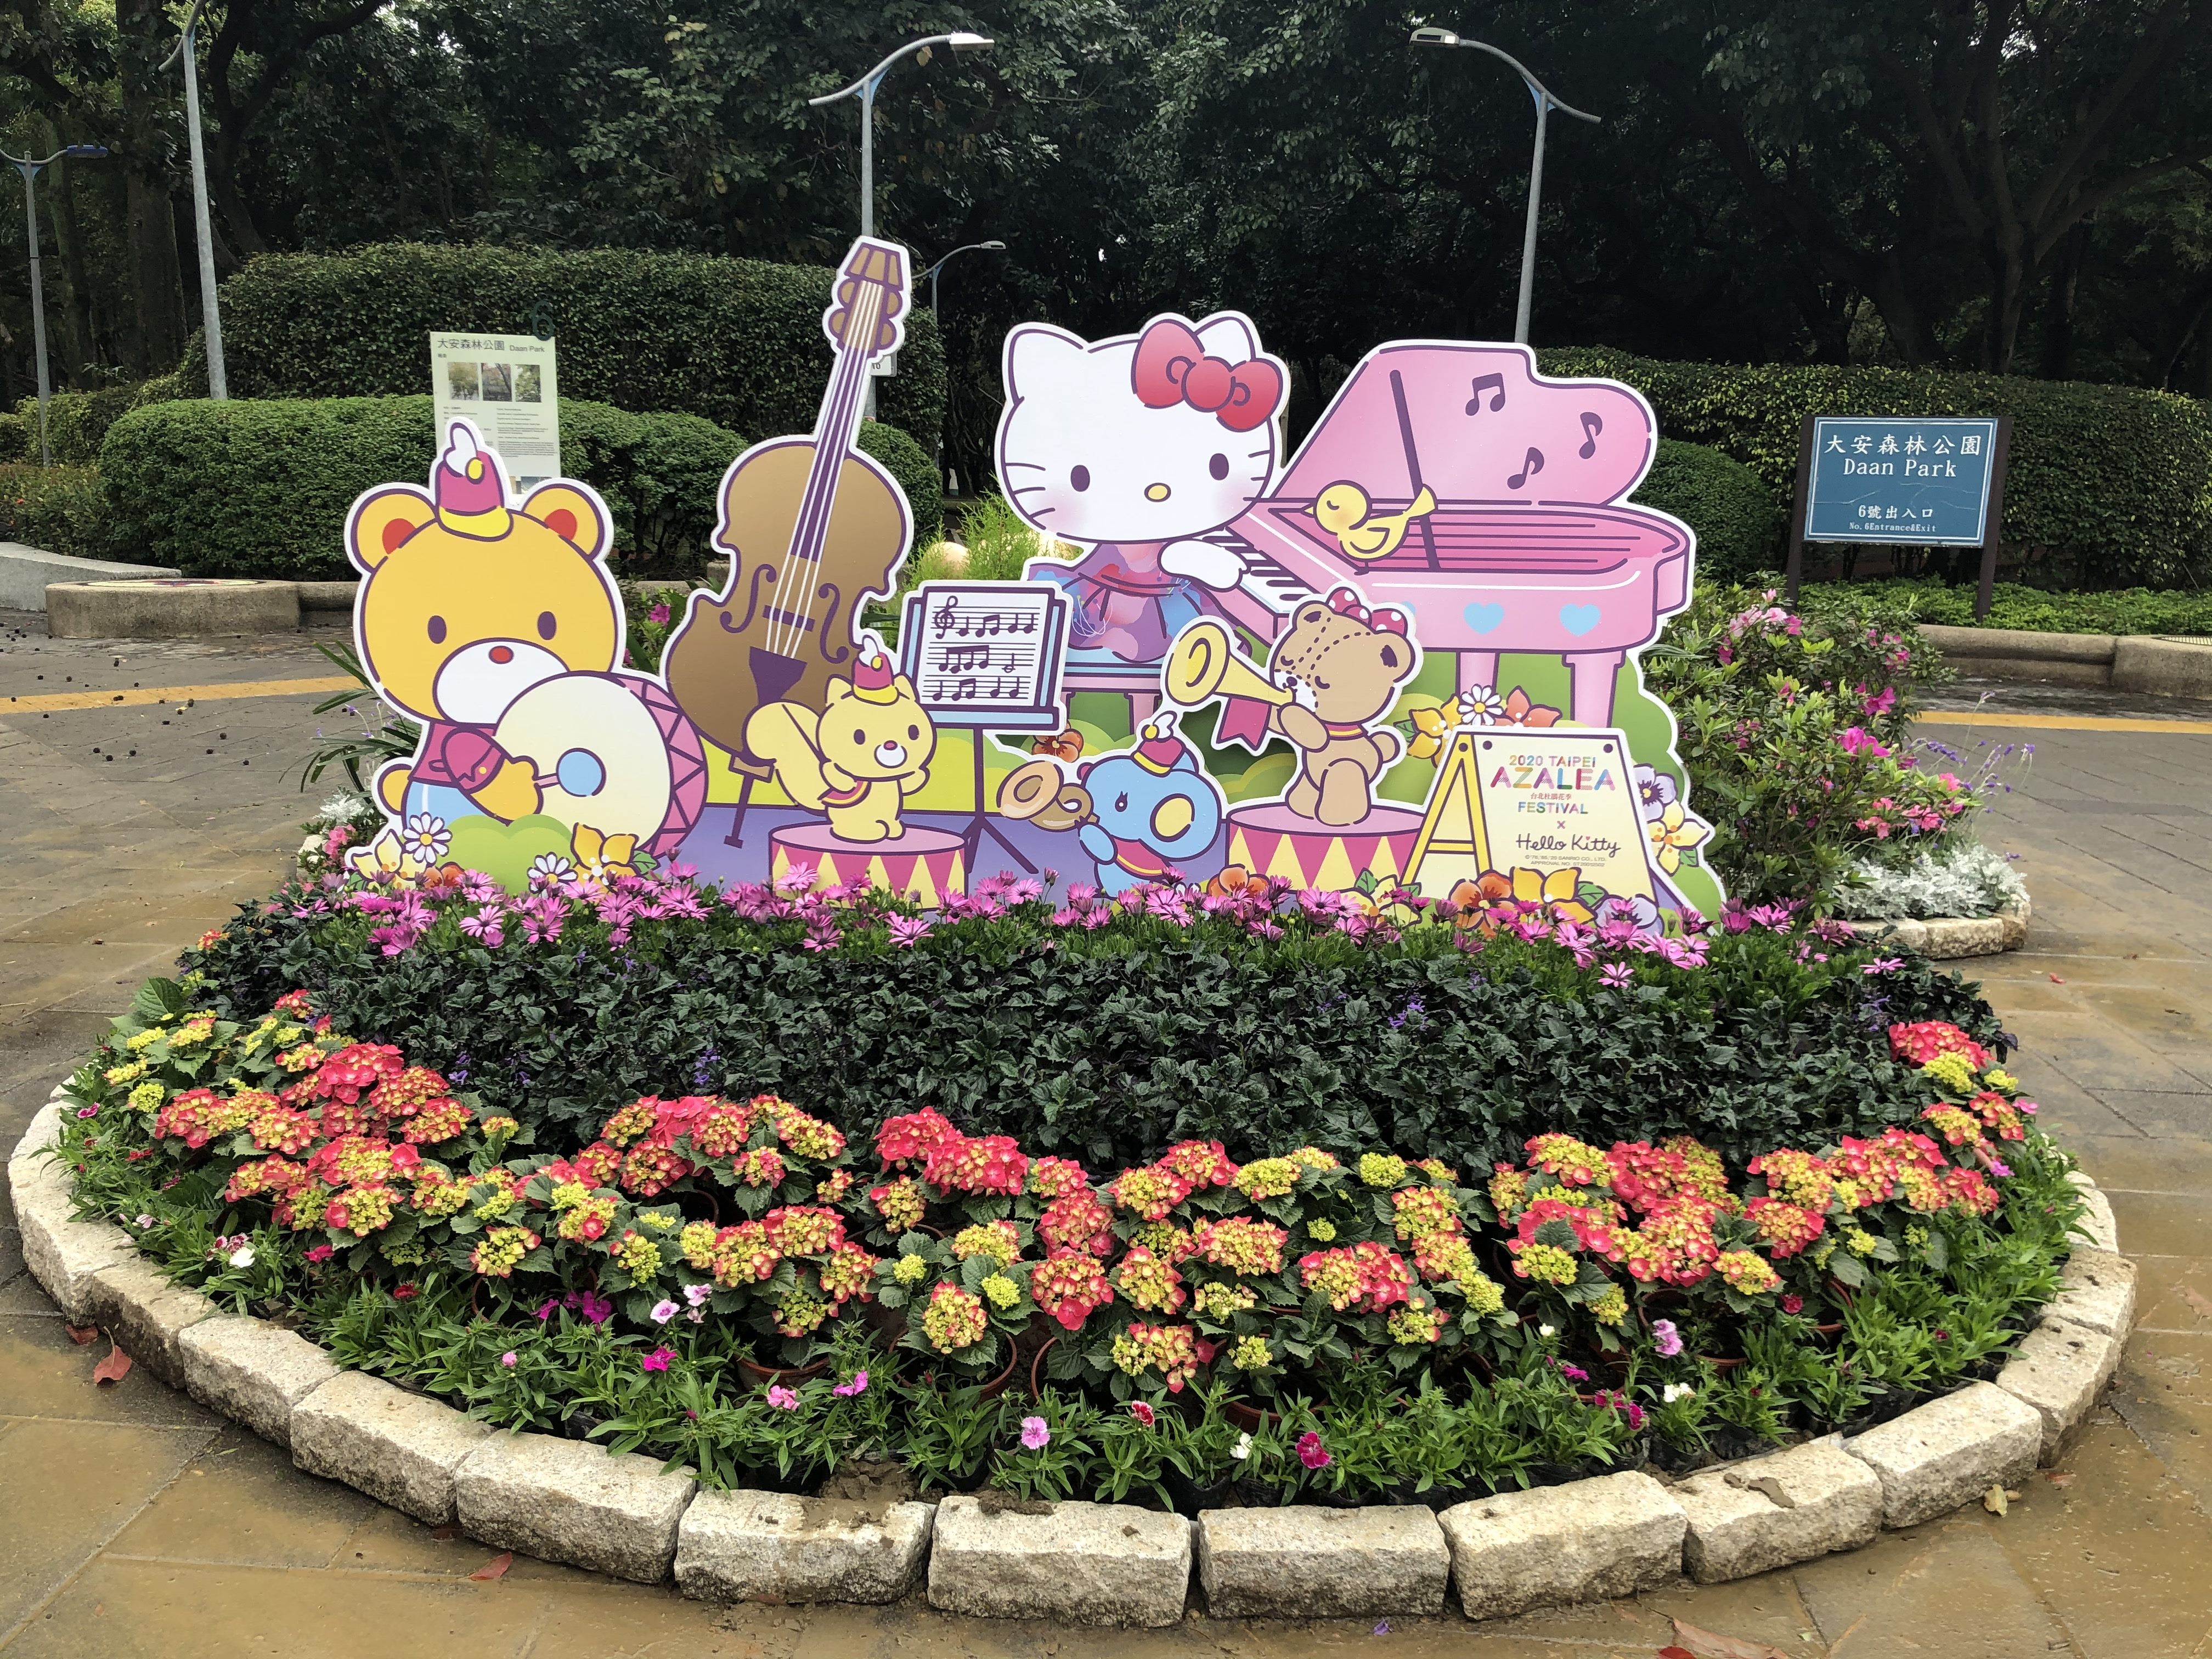 活動期間可至大安森林公園尋找6座Hello Kitty打卡點